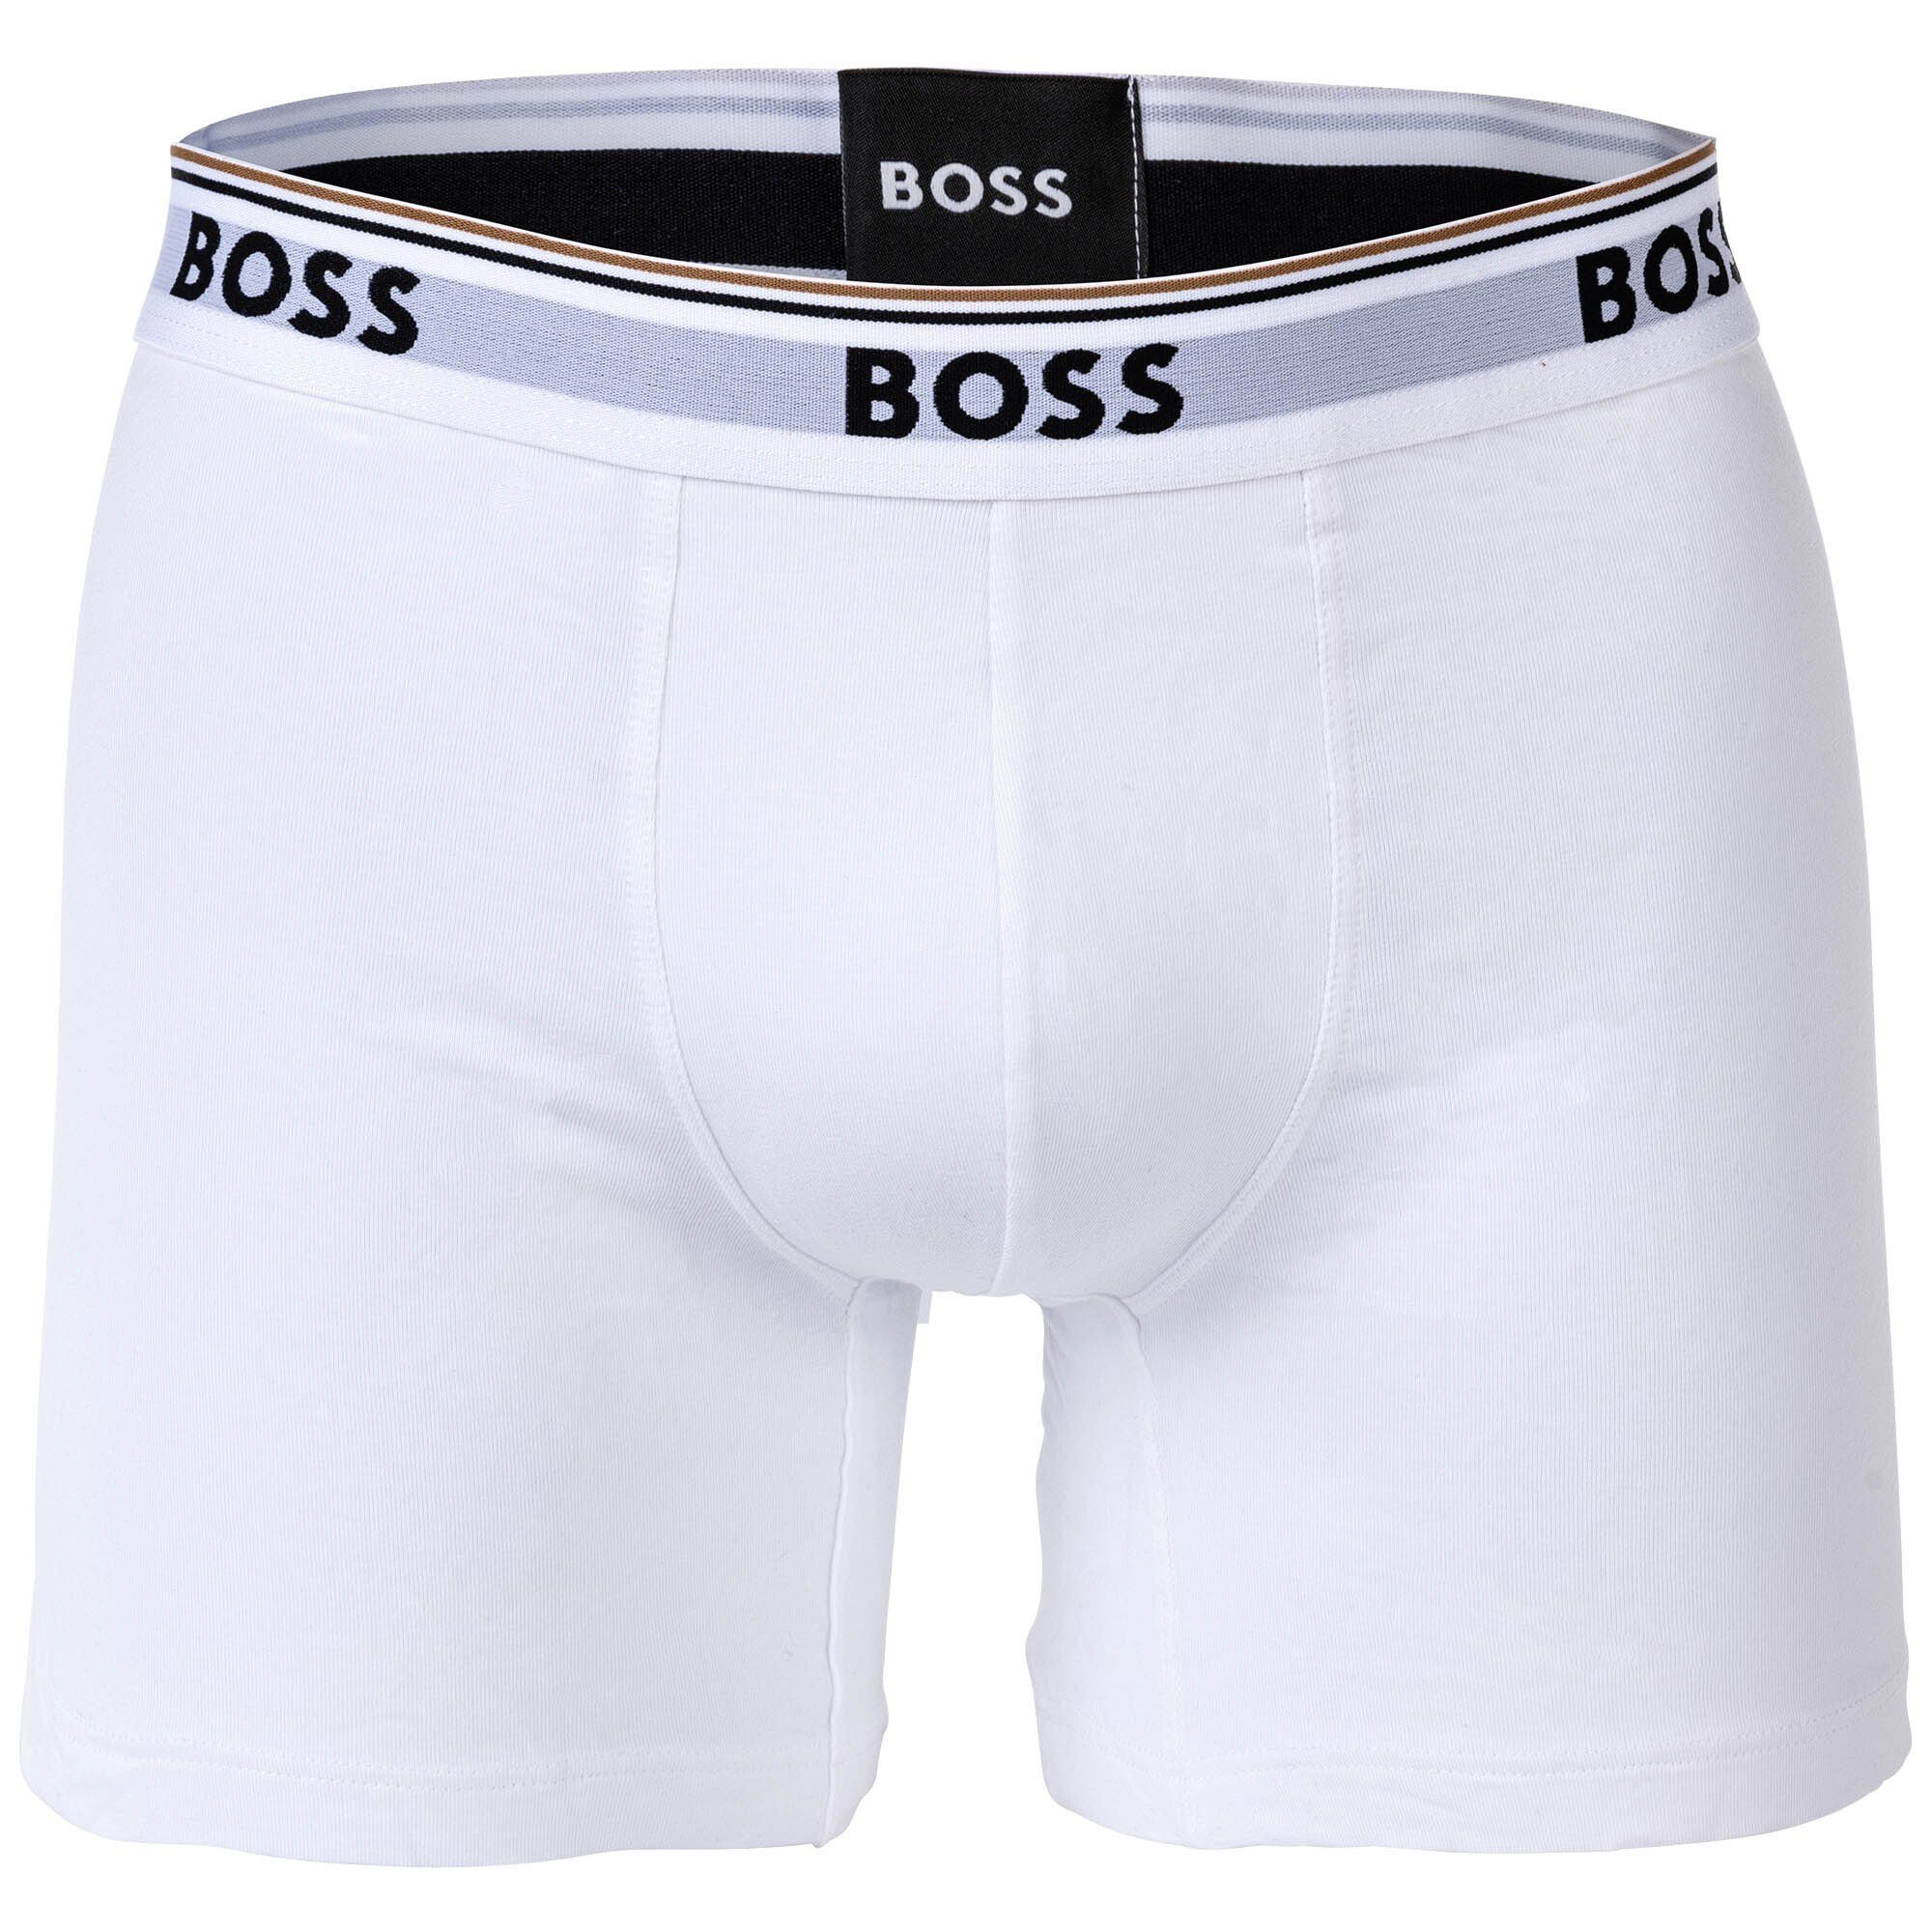 BOSS Boxer Herren Boxershorts, 6er - Weiß/Grau/Schwarz Briefs Boxer Pack 6P